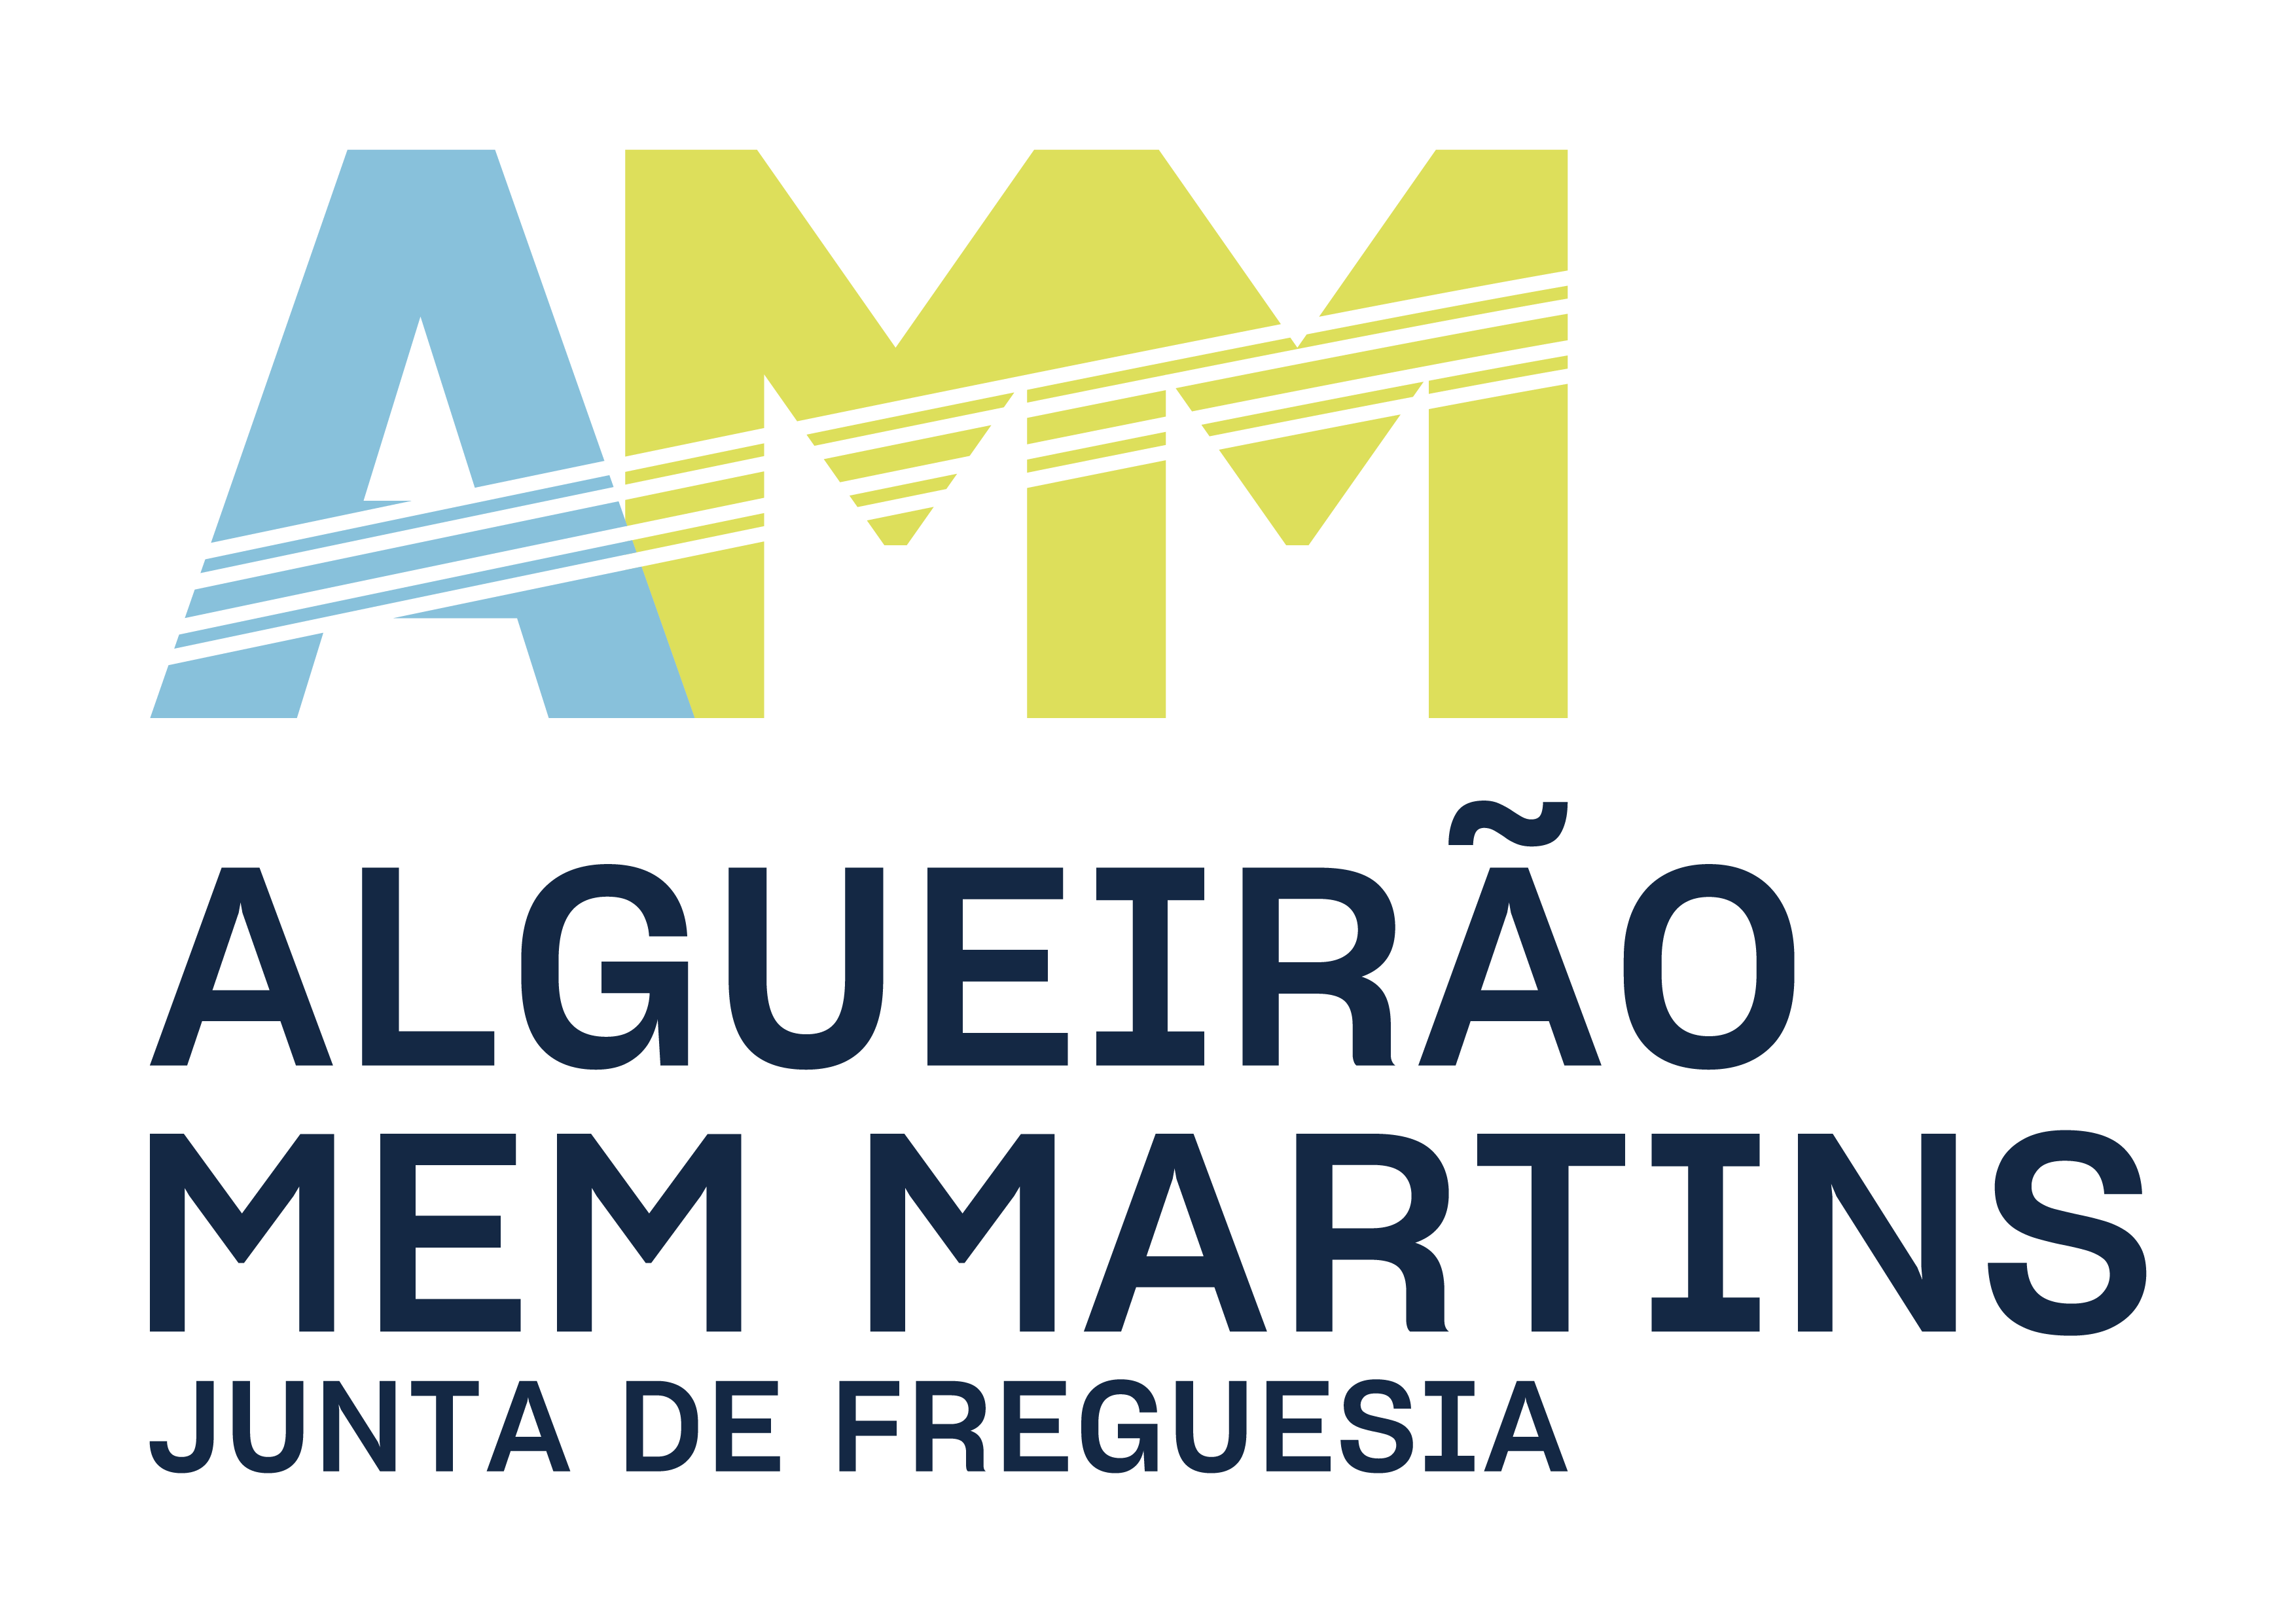 Junta de Freguesia de Algueirão - Mem Martins